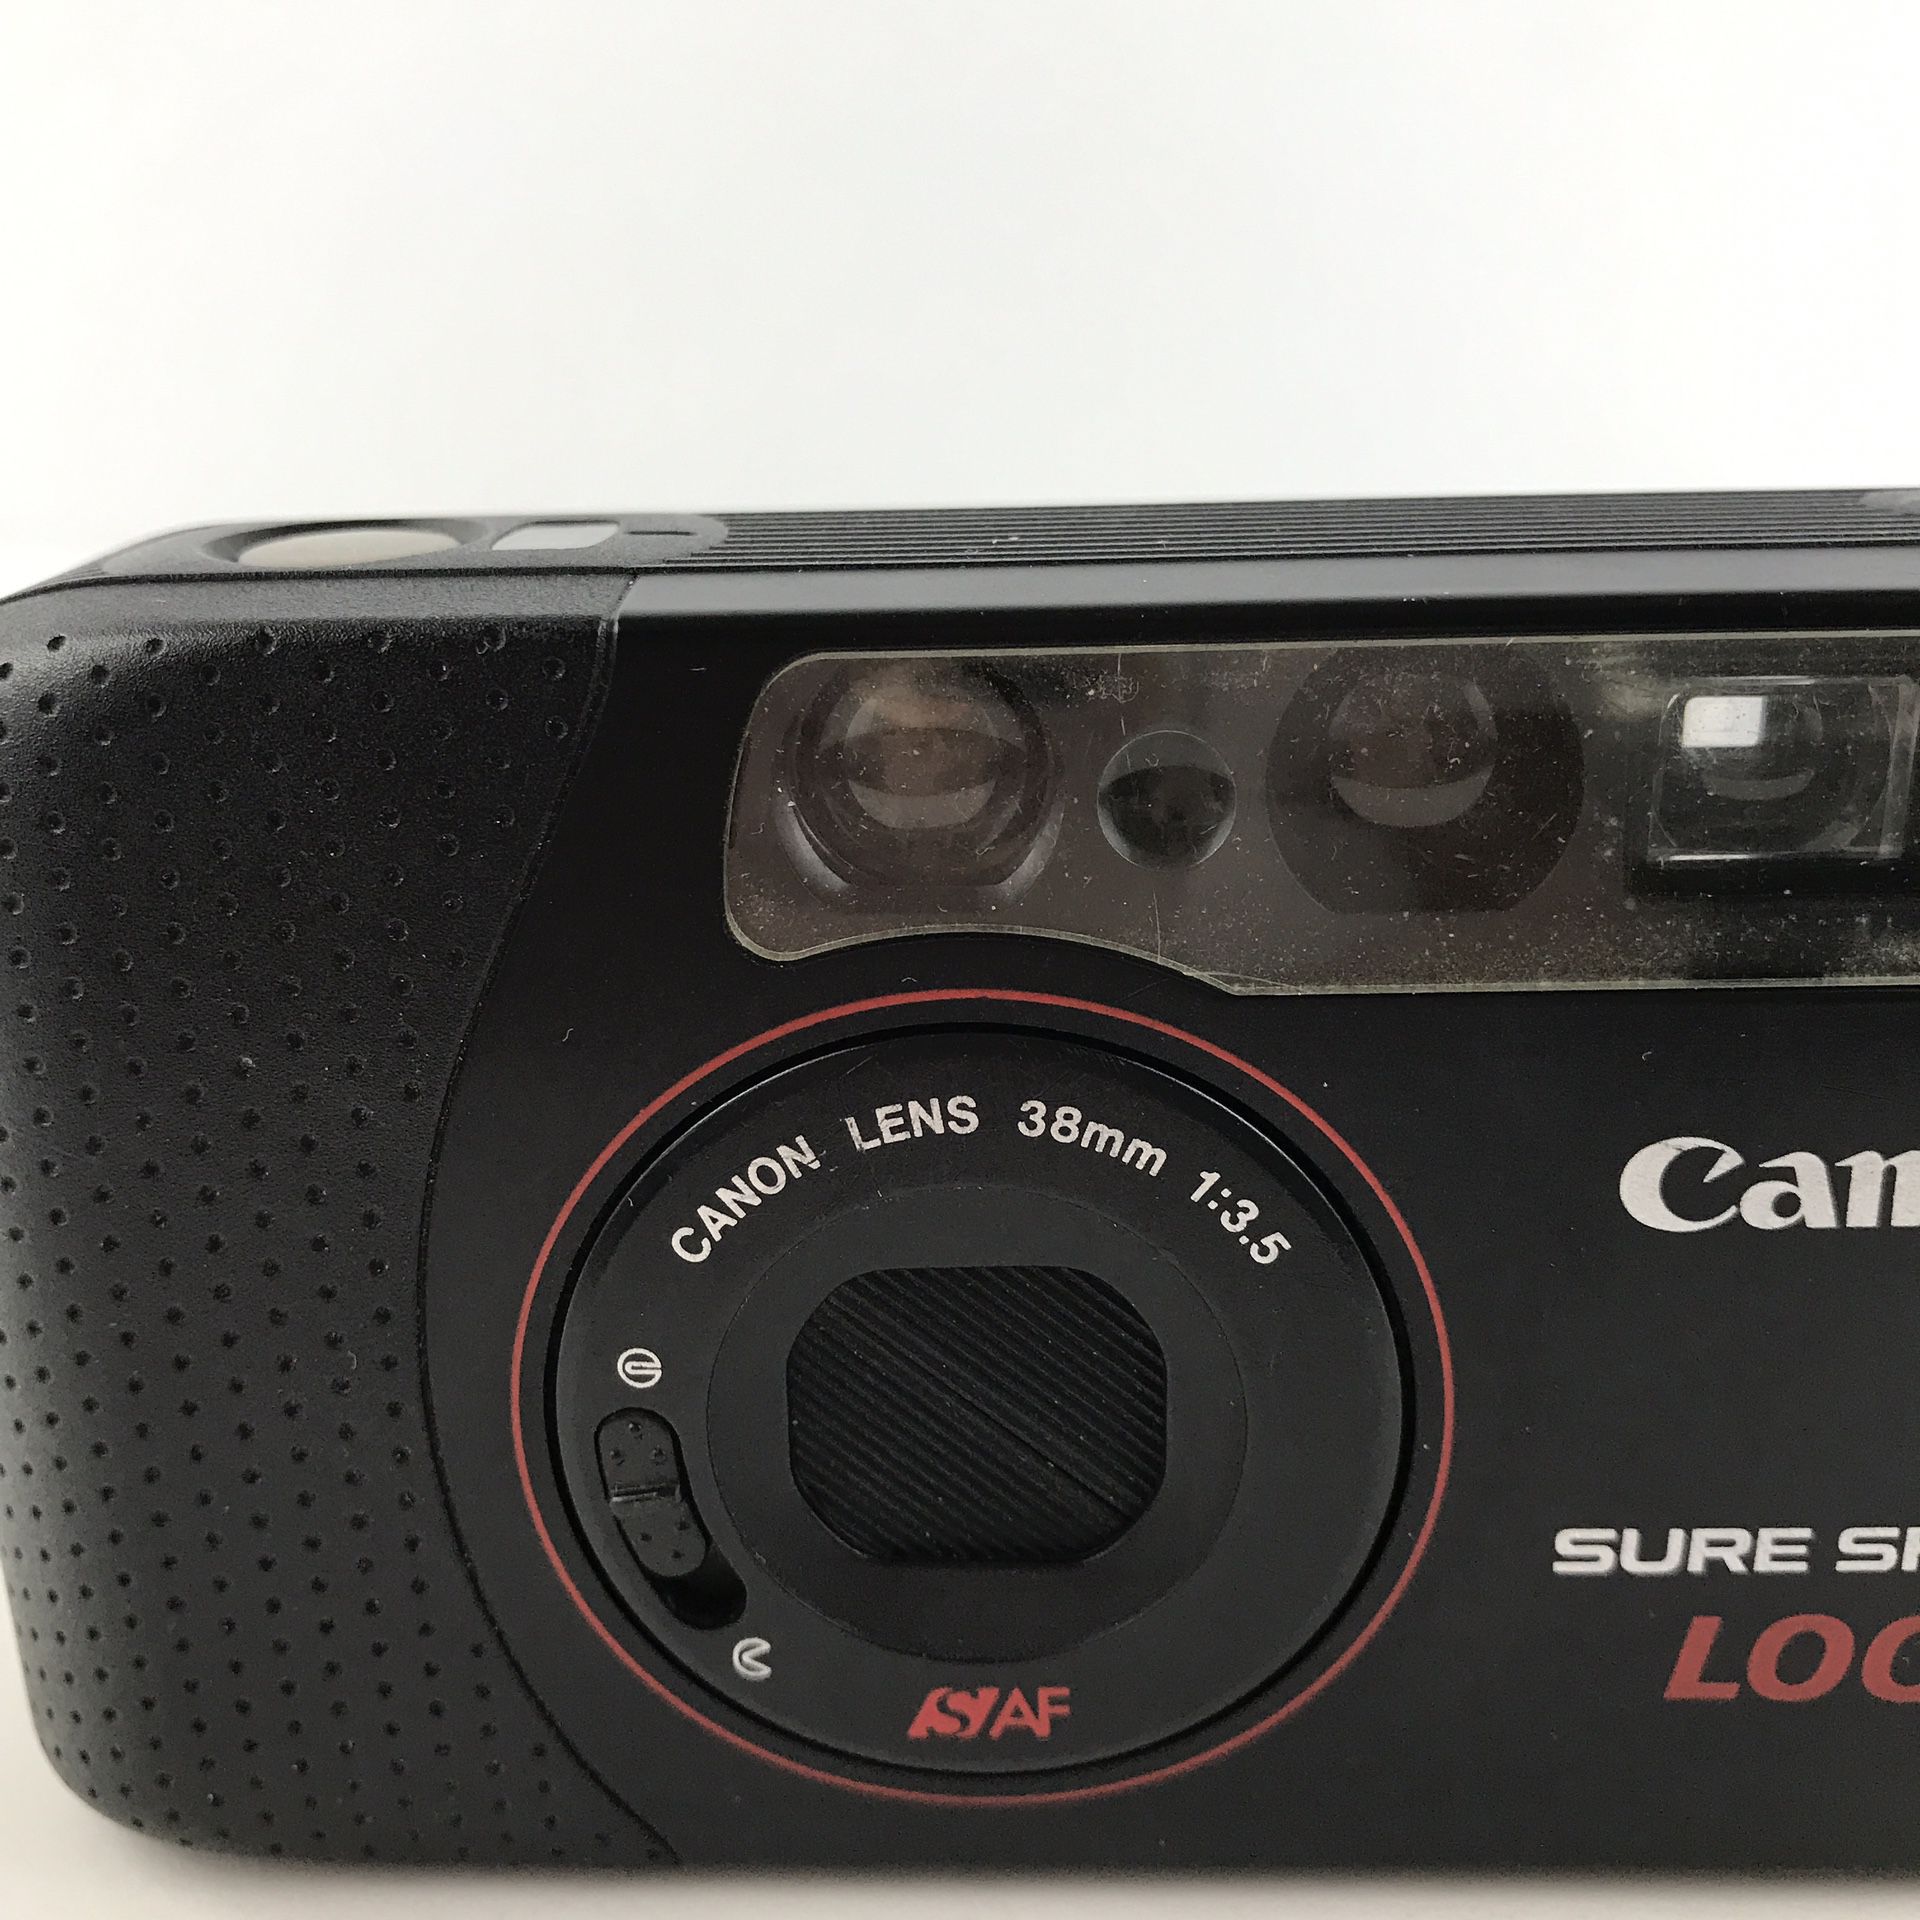 Canon Sure Shot LOOK Camera 38mm 1:3:5 film Requires a 3 volt Battery